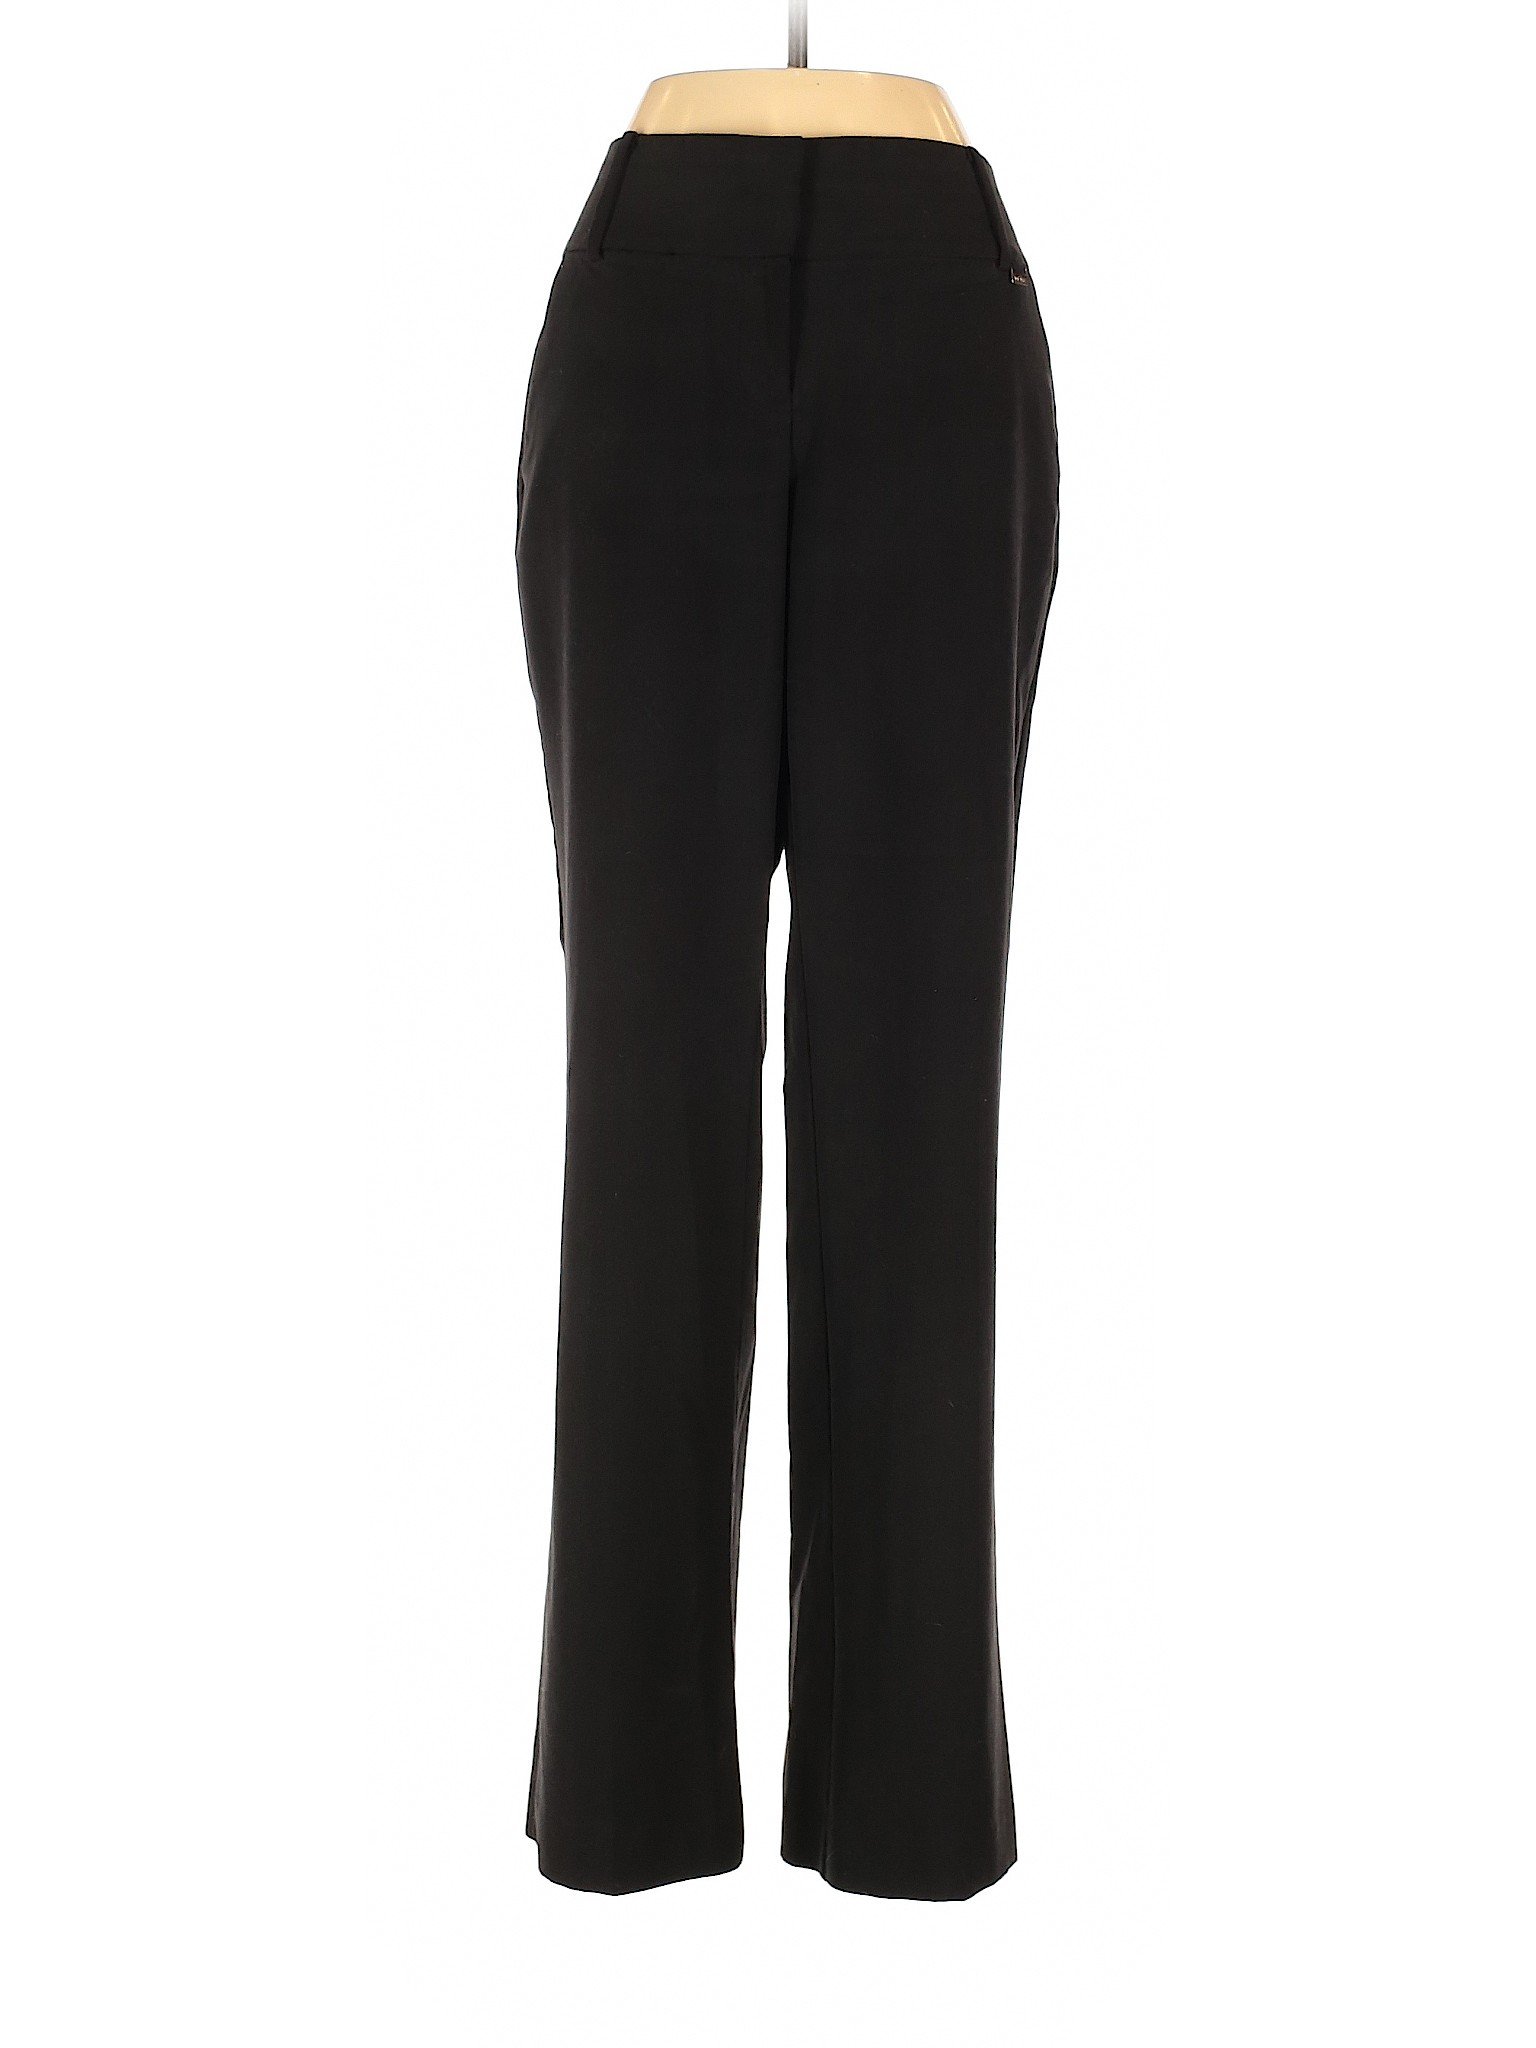 Nine West Women Black Dress Pants 4 | eBay